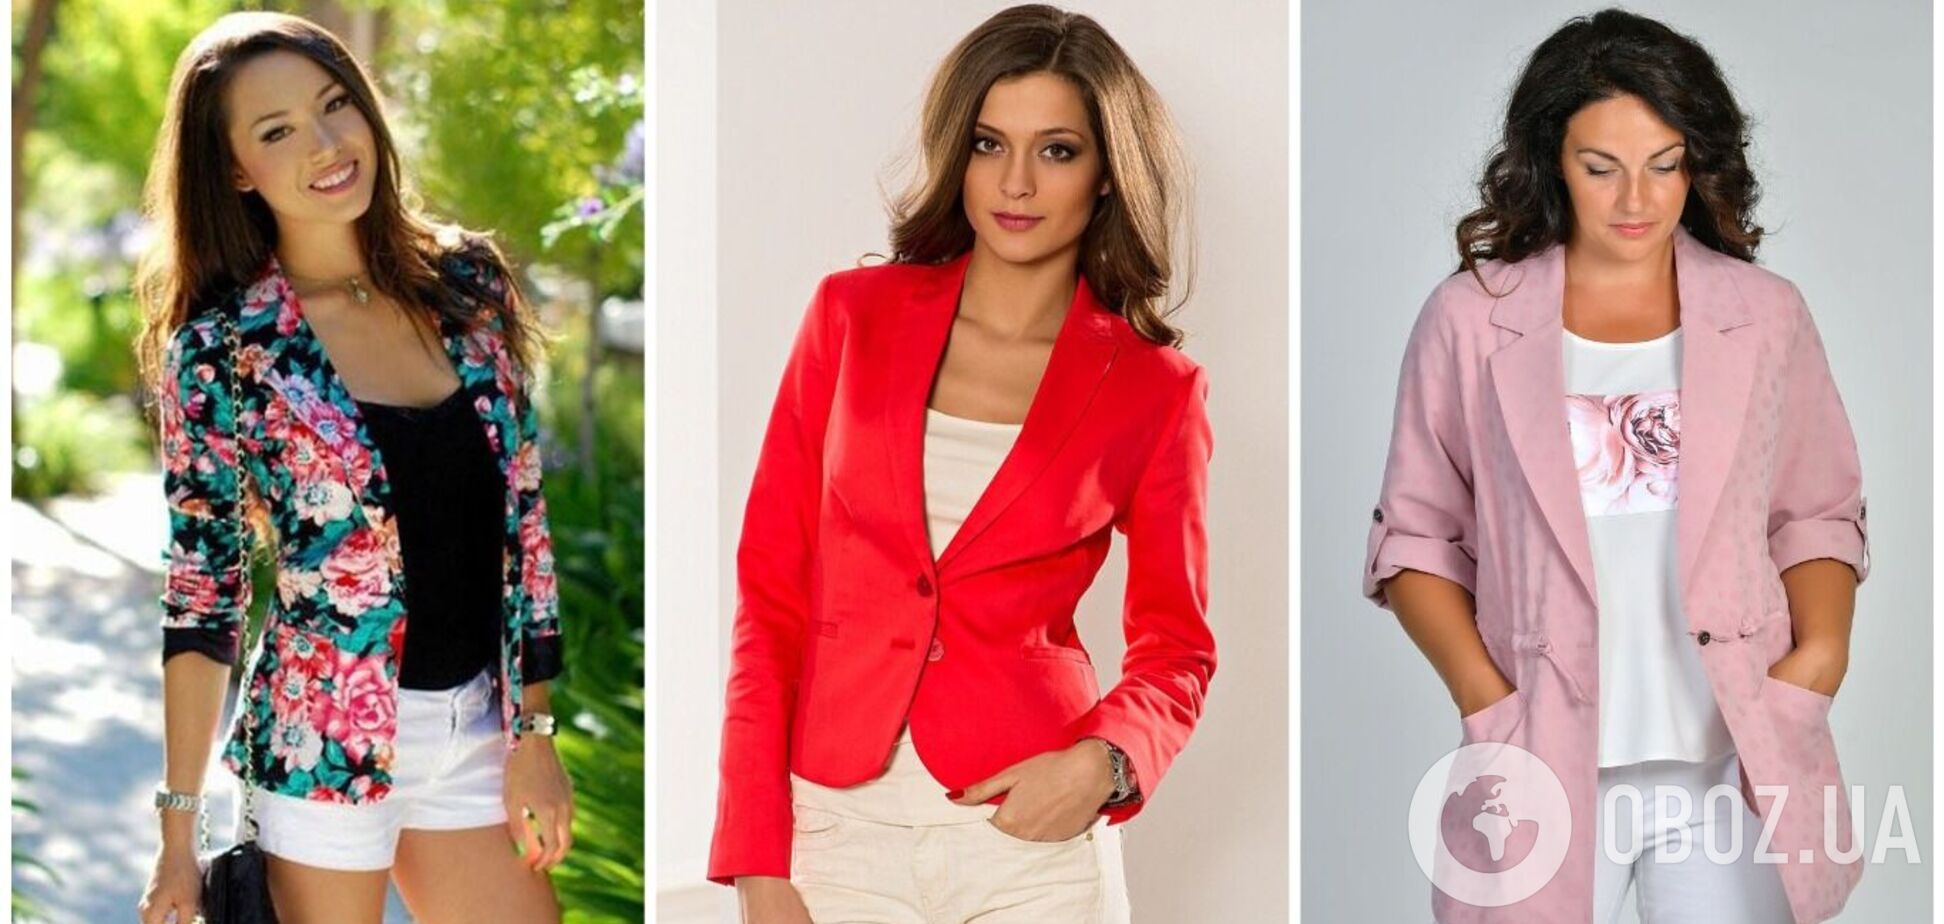 Пора выбросить и забыть! Пять женских пиджаков, которые давно вышли из моды. Фото